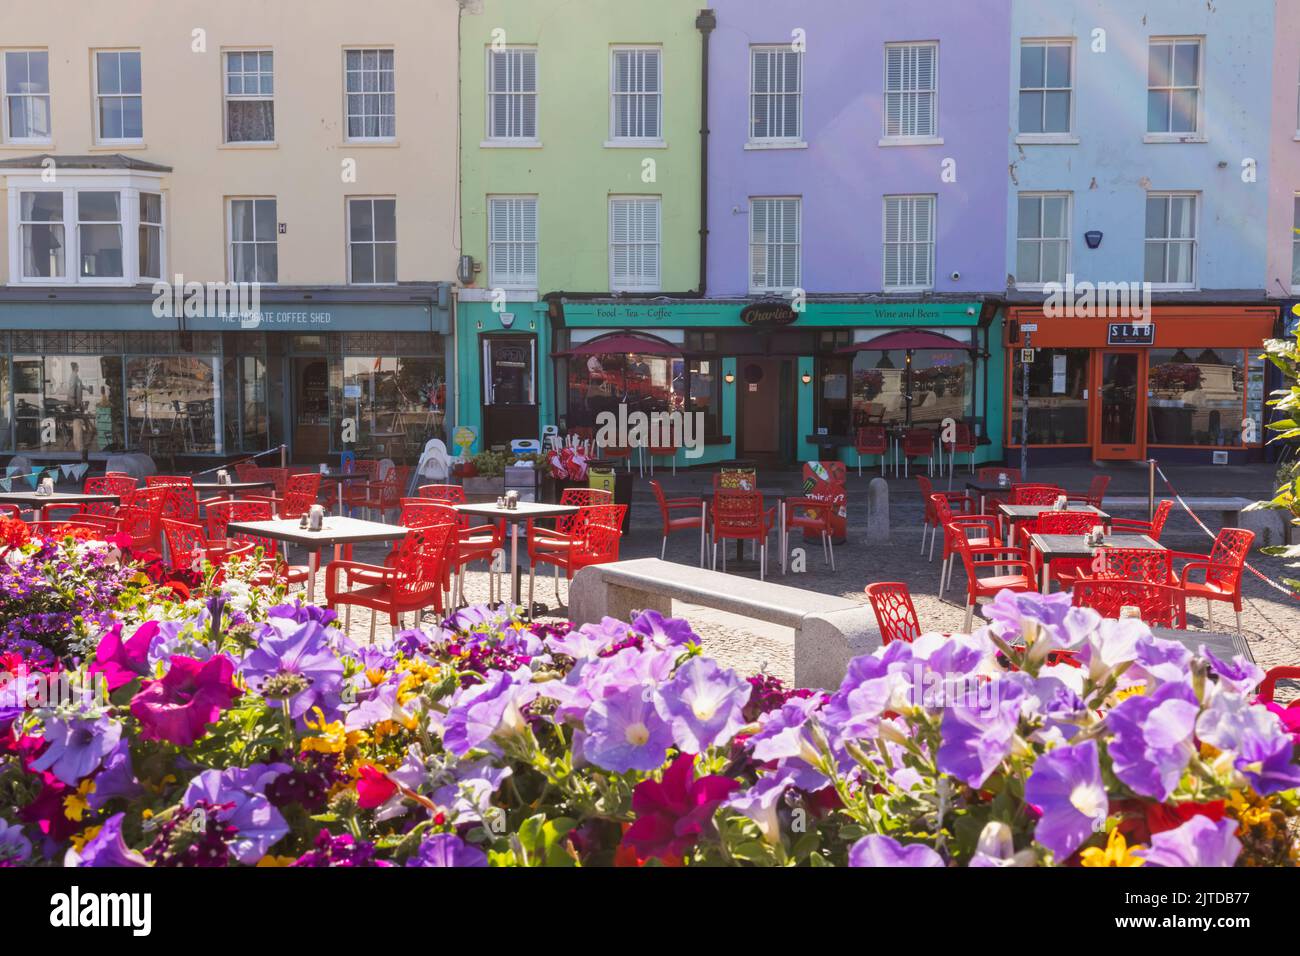 Angleterre, Kent, Margate, Old Town cafés et restaurants colorés en bord de mer Banque D'Images